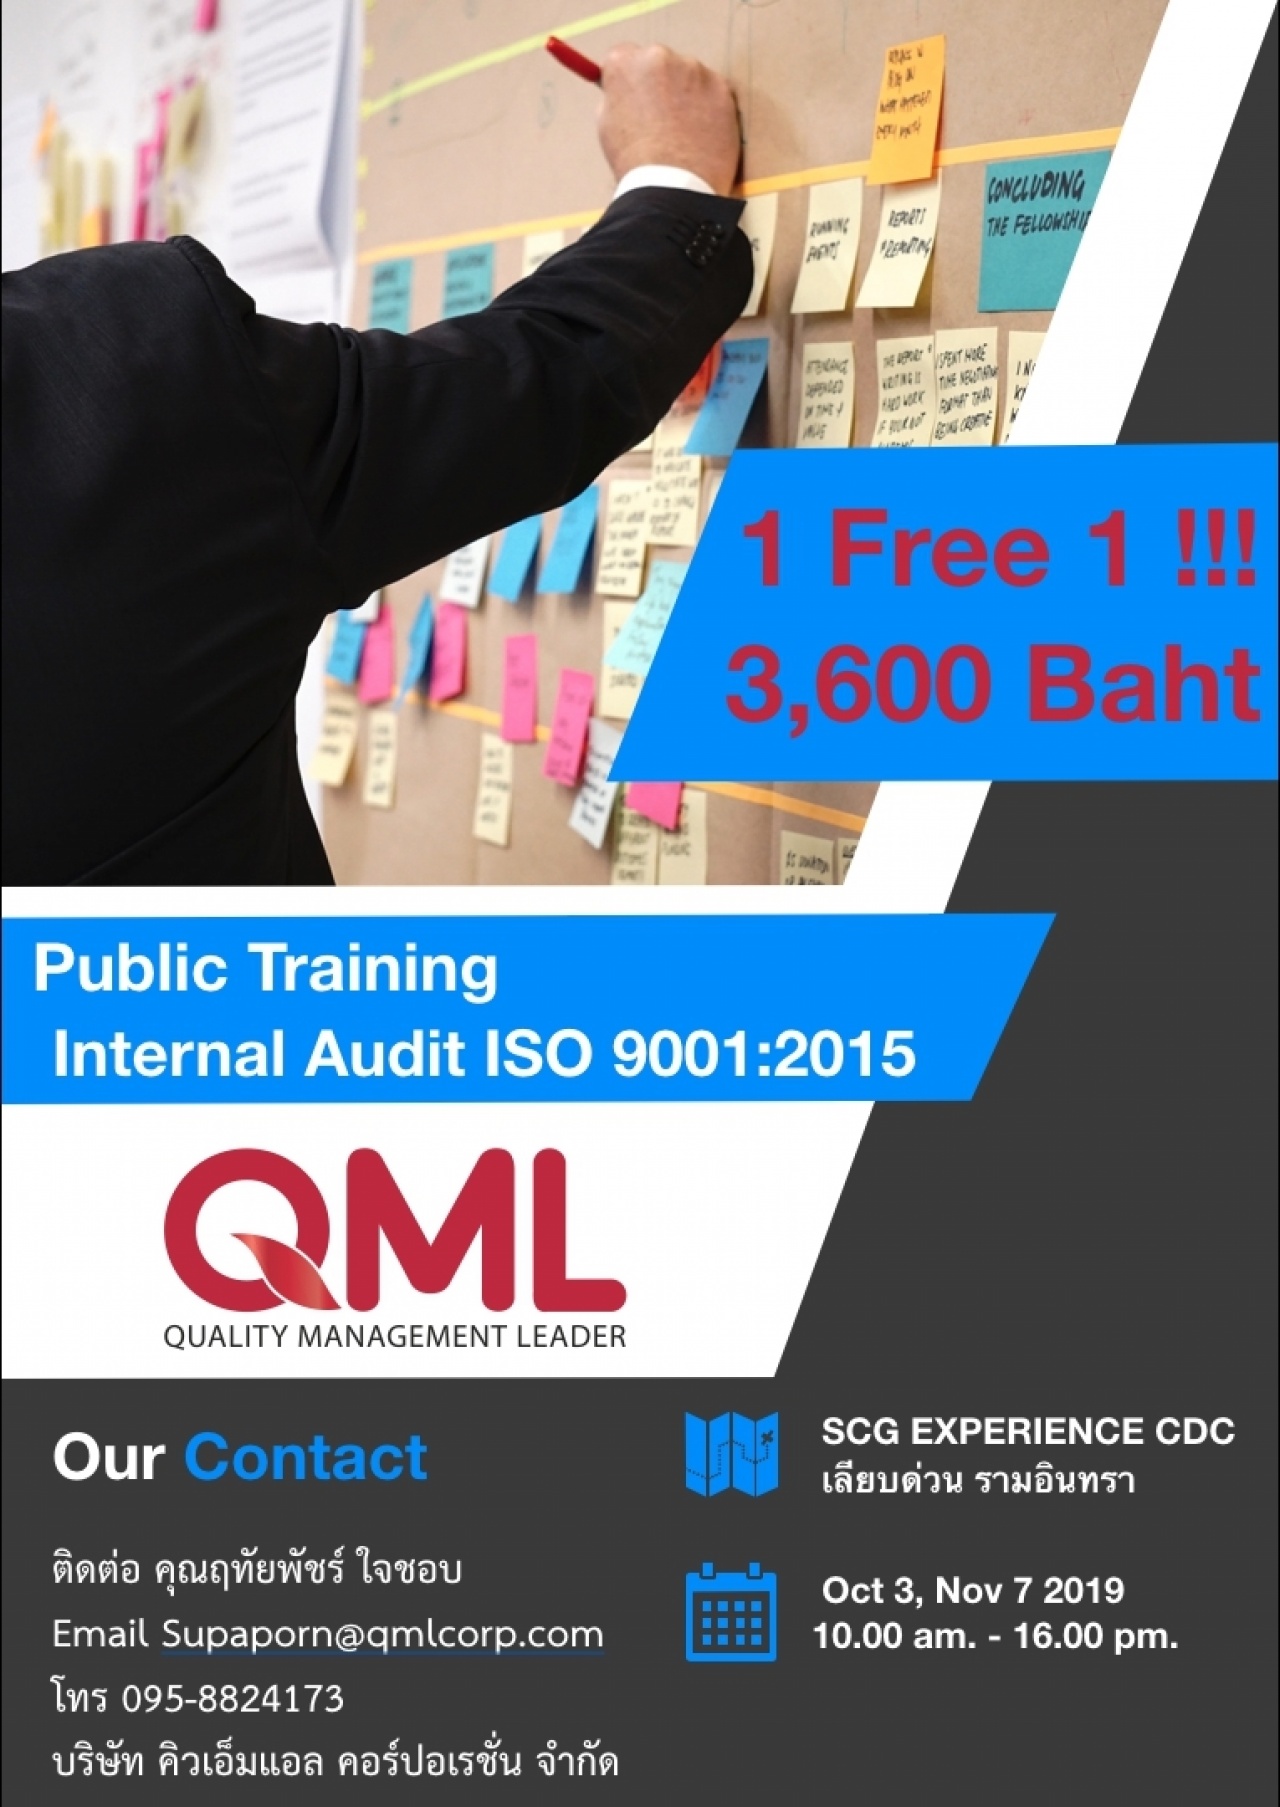 หลักสูตรการฝึกอบรม internal audit ISO 9001:2015 